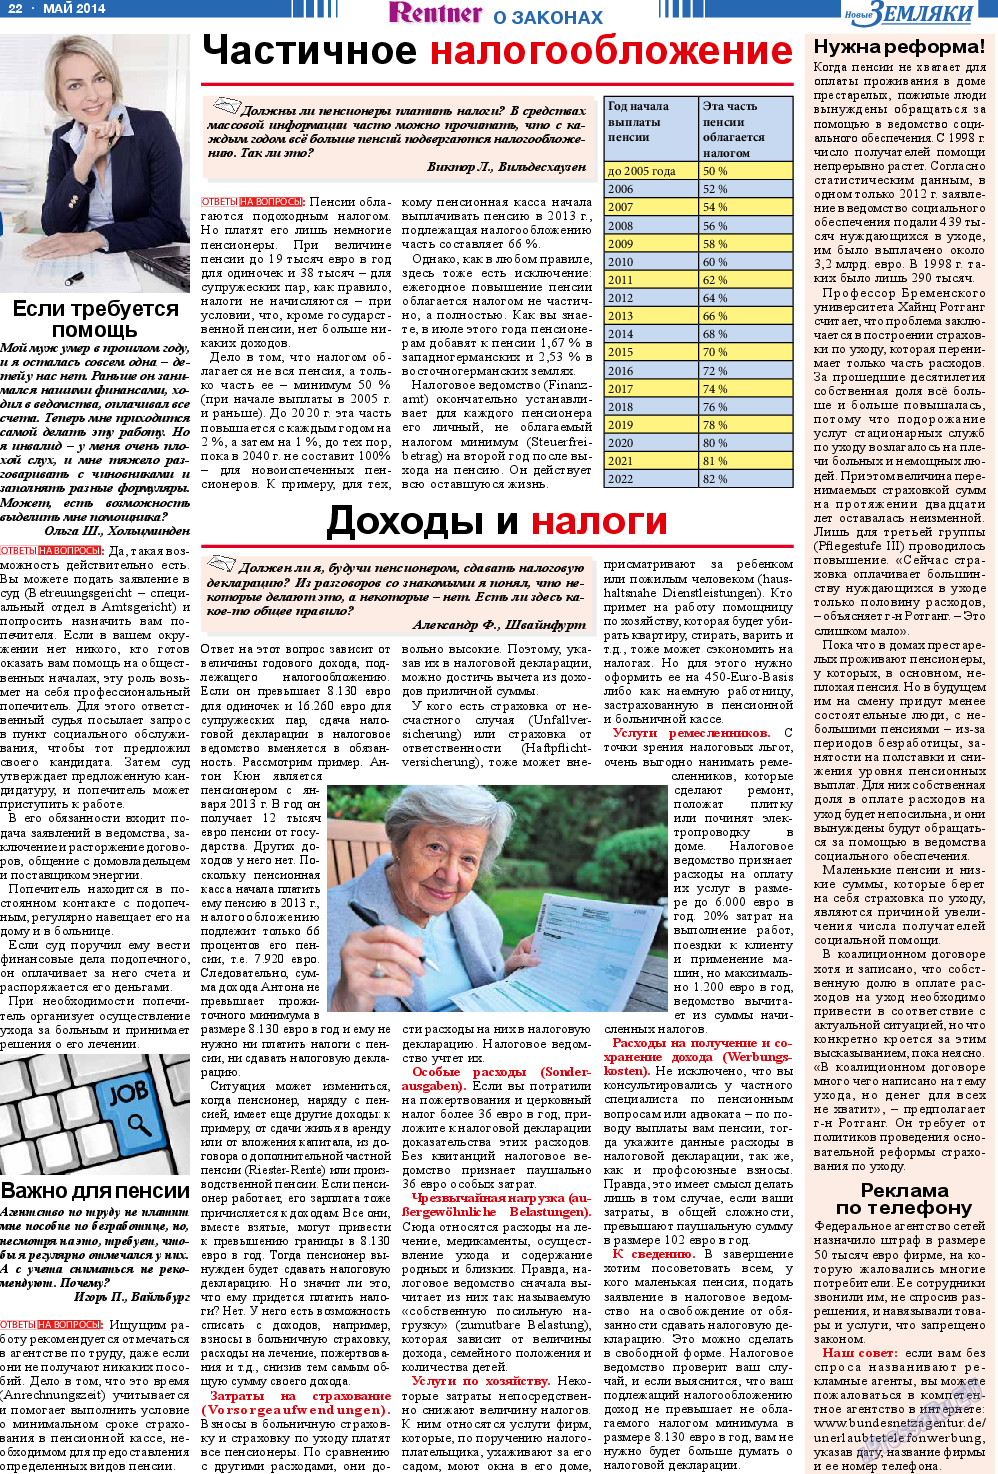 Новые Земляки, газета. 2014 №5 стр.22